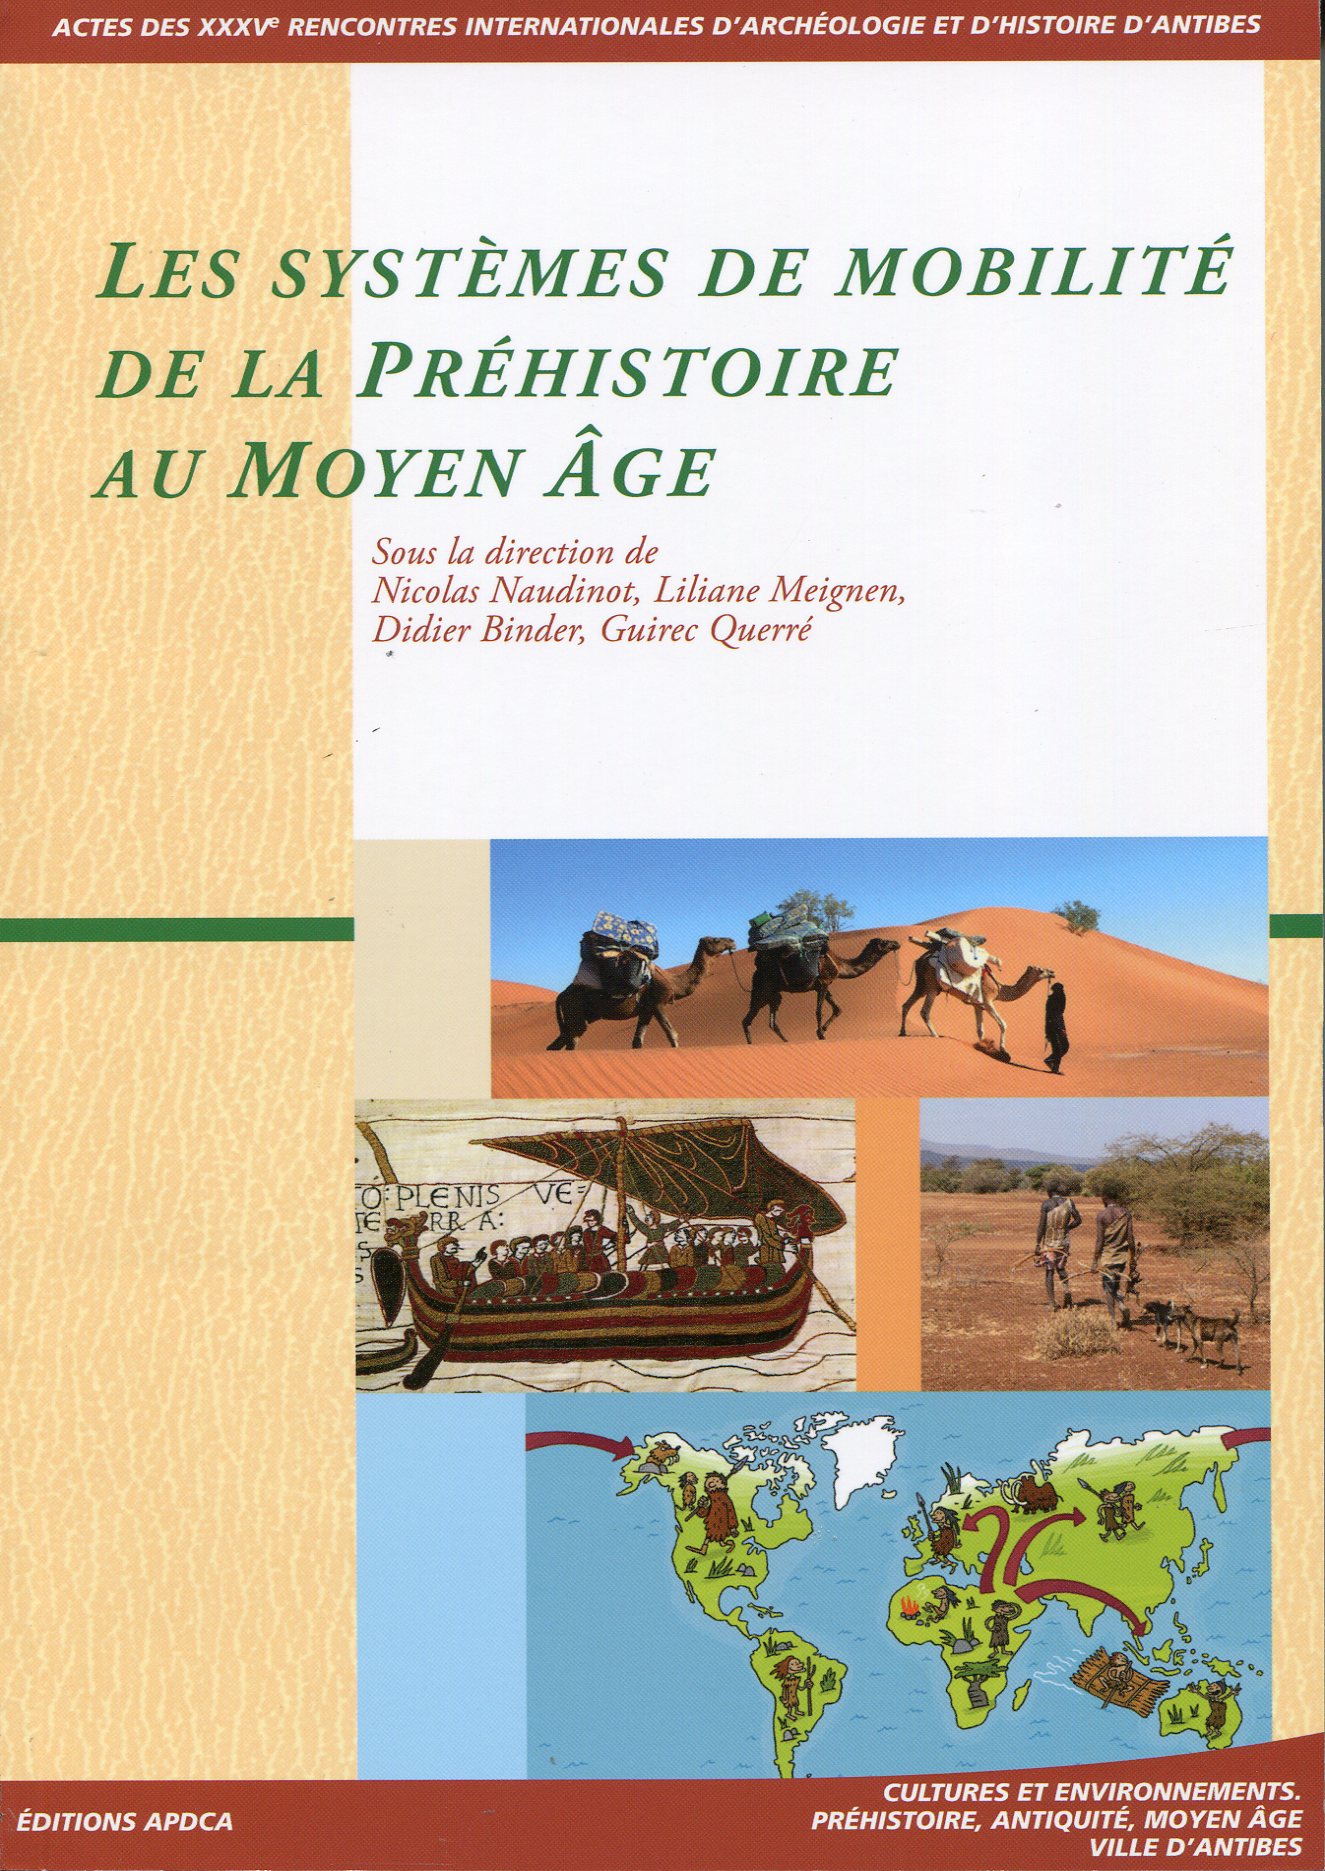 Les systèmes de mobilité de la Préhistoire au Moyen Age, (actes XXXVe rencontres internationales d'archéologie et d'histoire d'Antibes), 2015, 442 p. APDCA